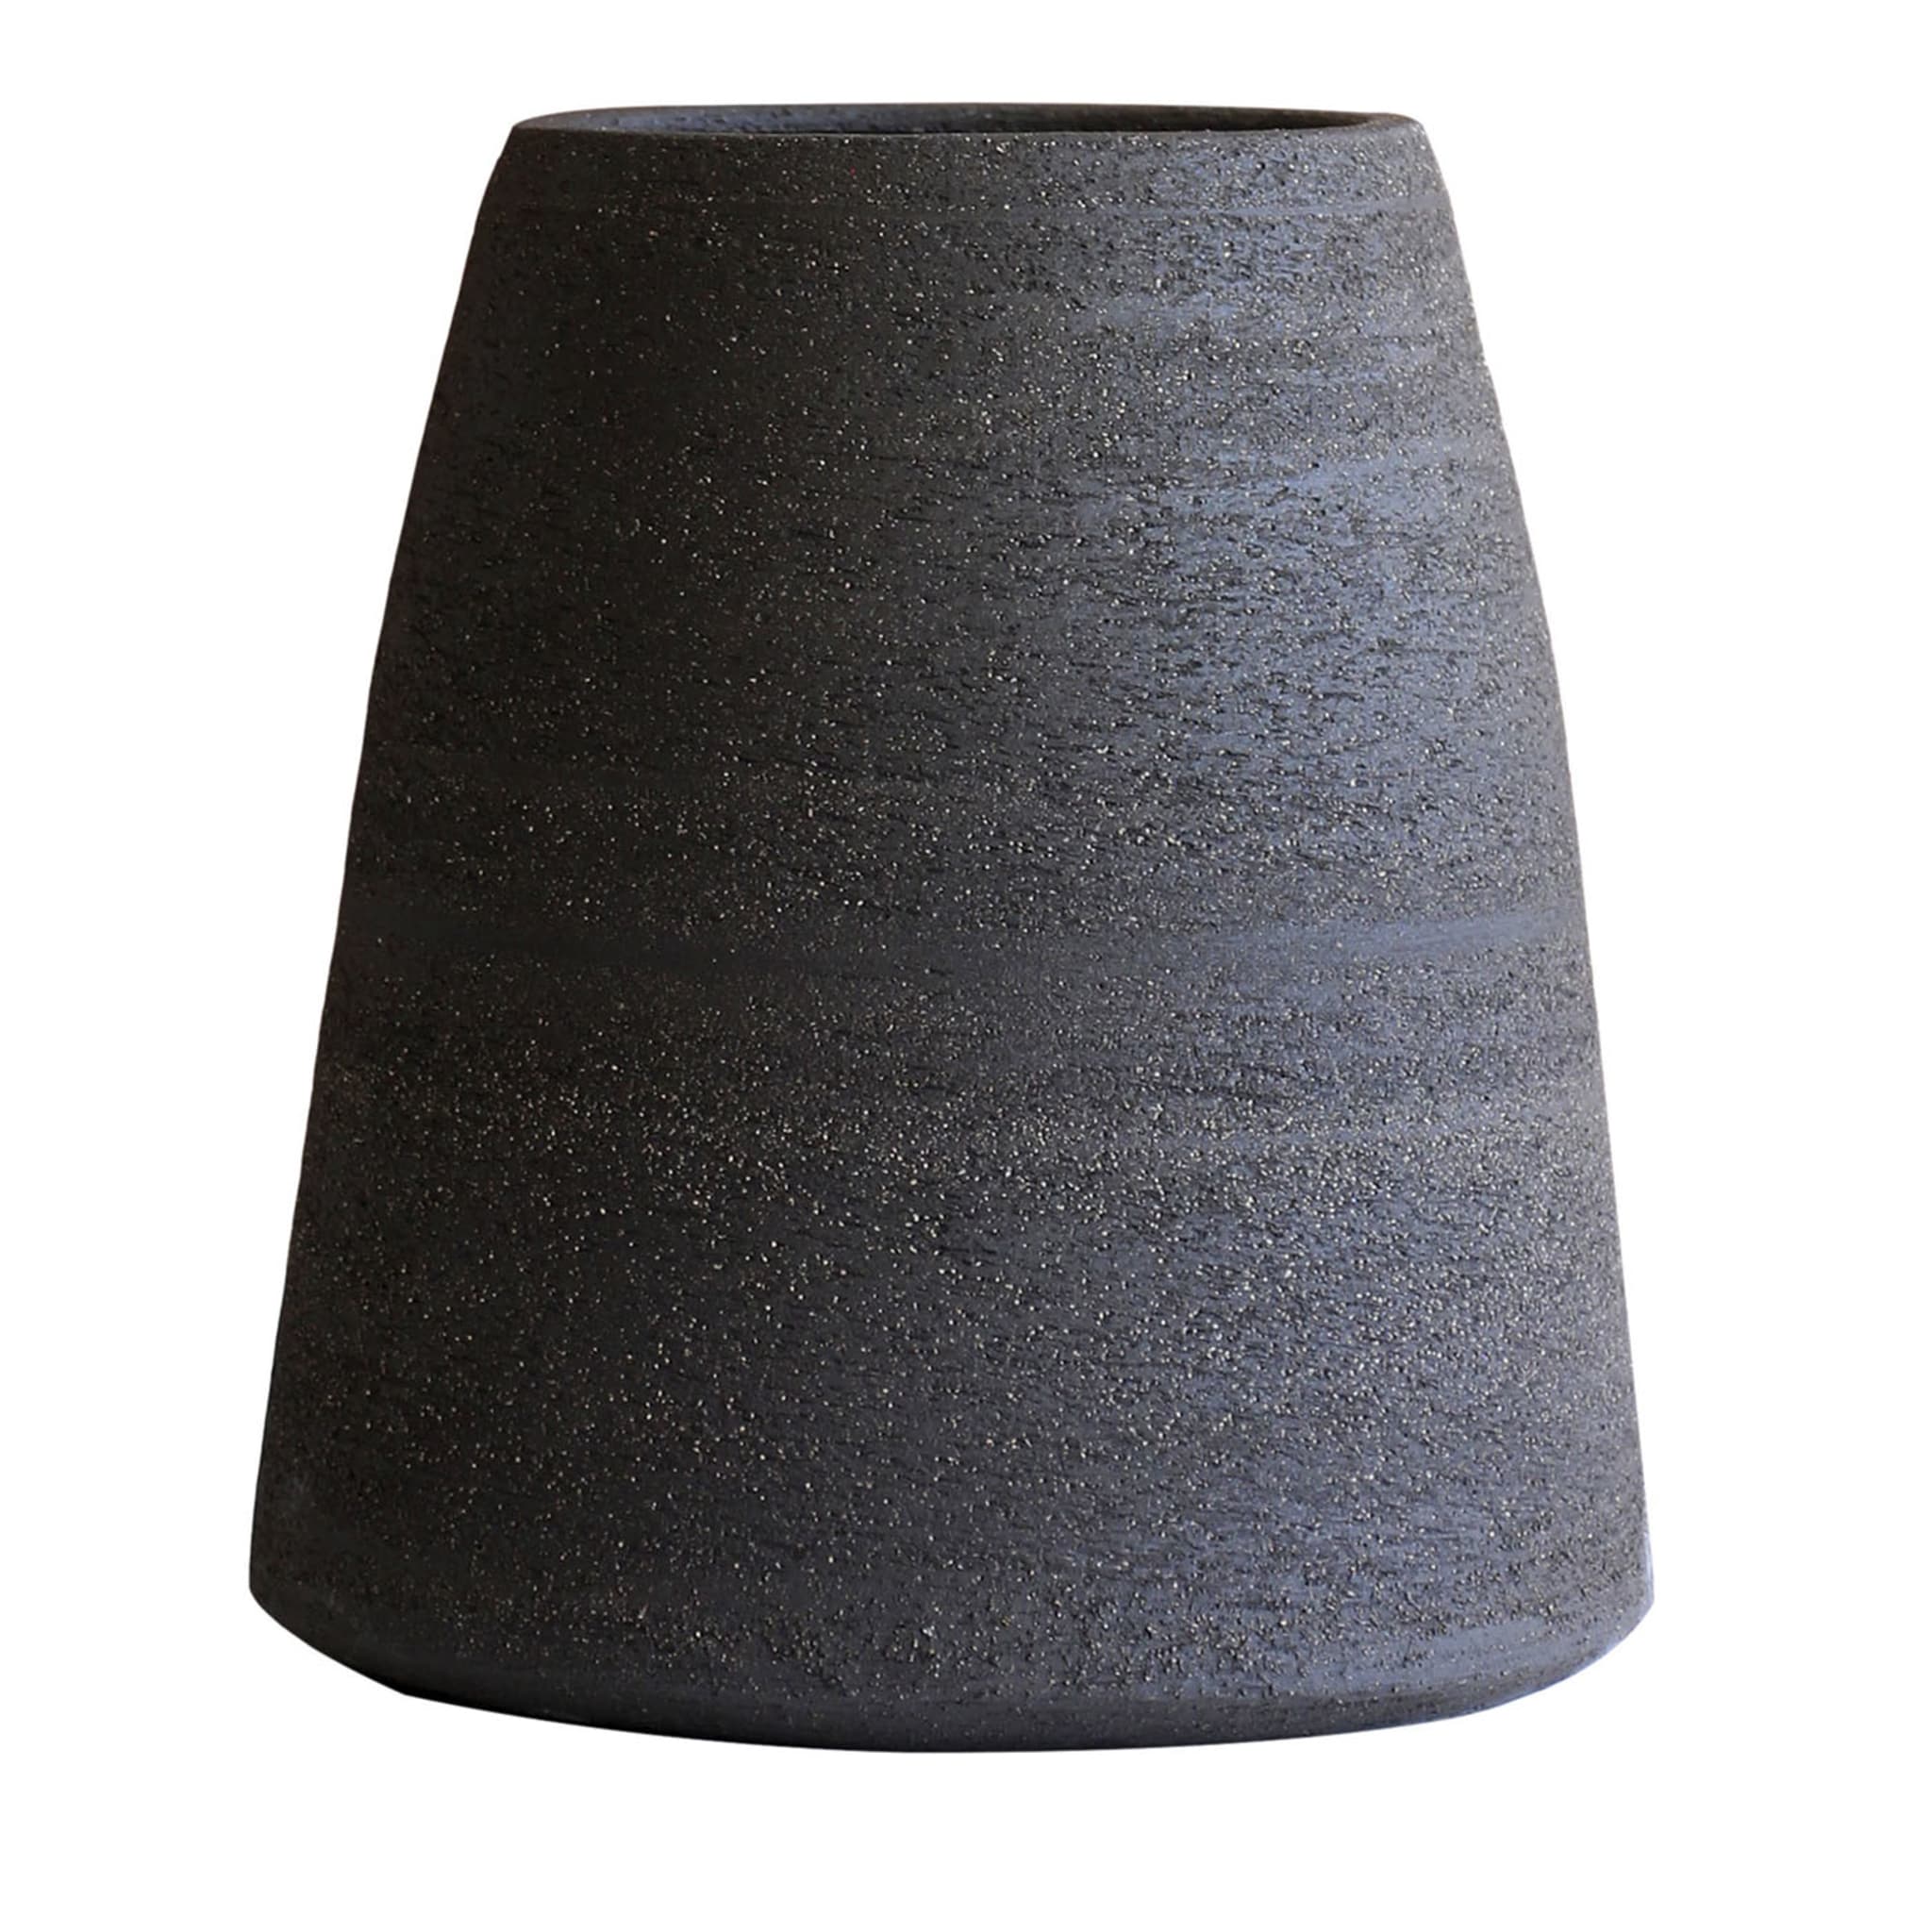 Kegelförmige dekorative Vase in Carbon-Schwarz - Hauptansicht